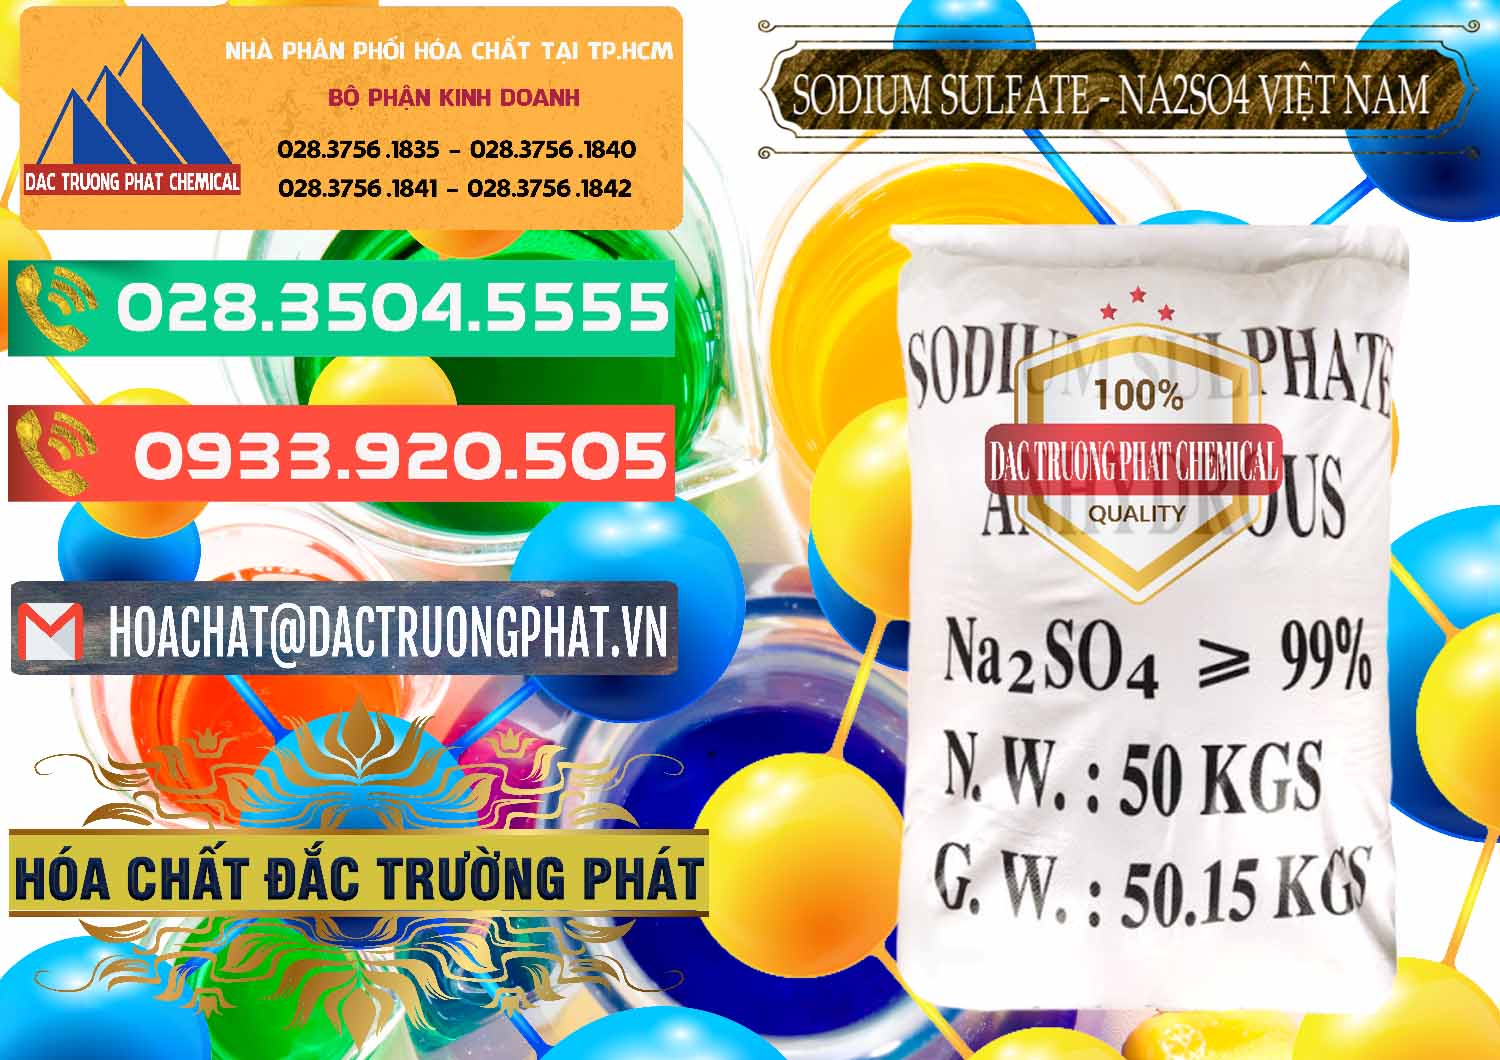 Cty cung cấp _ kinh doanh Sodium Sulphate - Muối Sunfat Na2SO4 Việt Nam - 0355 - Bán - cung ứng hóa chất tại TP.HCM - congtyhoachat.com.vn